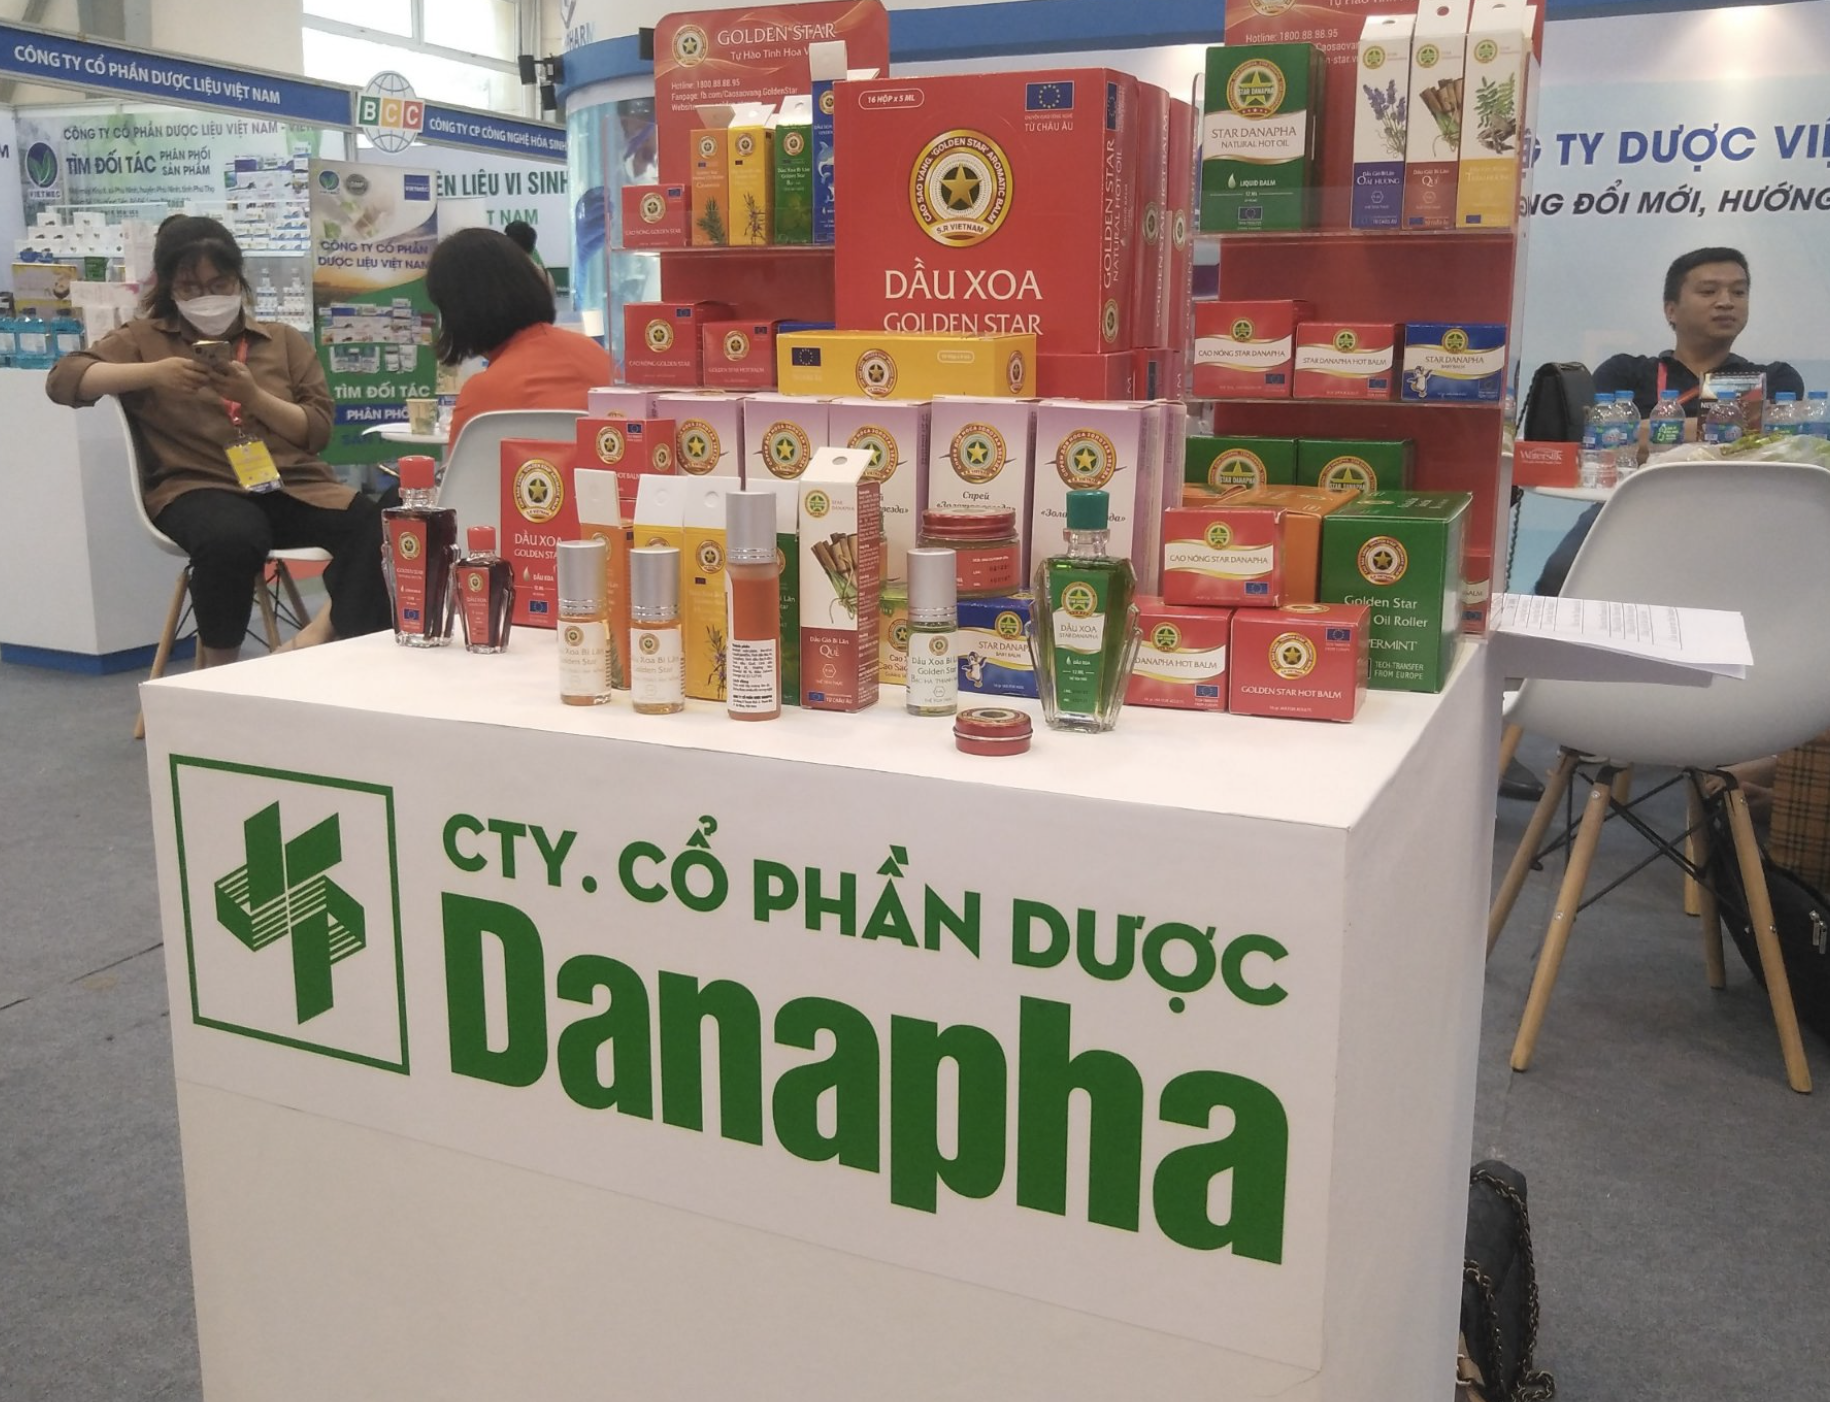 Vì sao Công ty Cổ phần Dược Danapha bị cưỡng chế gần 3,8 tỷ đồng?